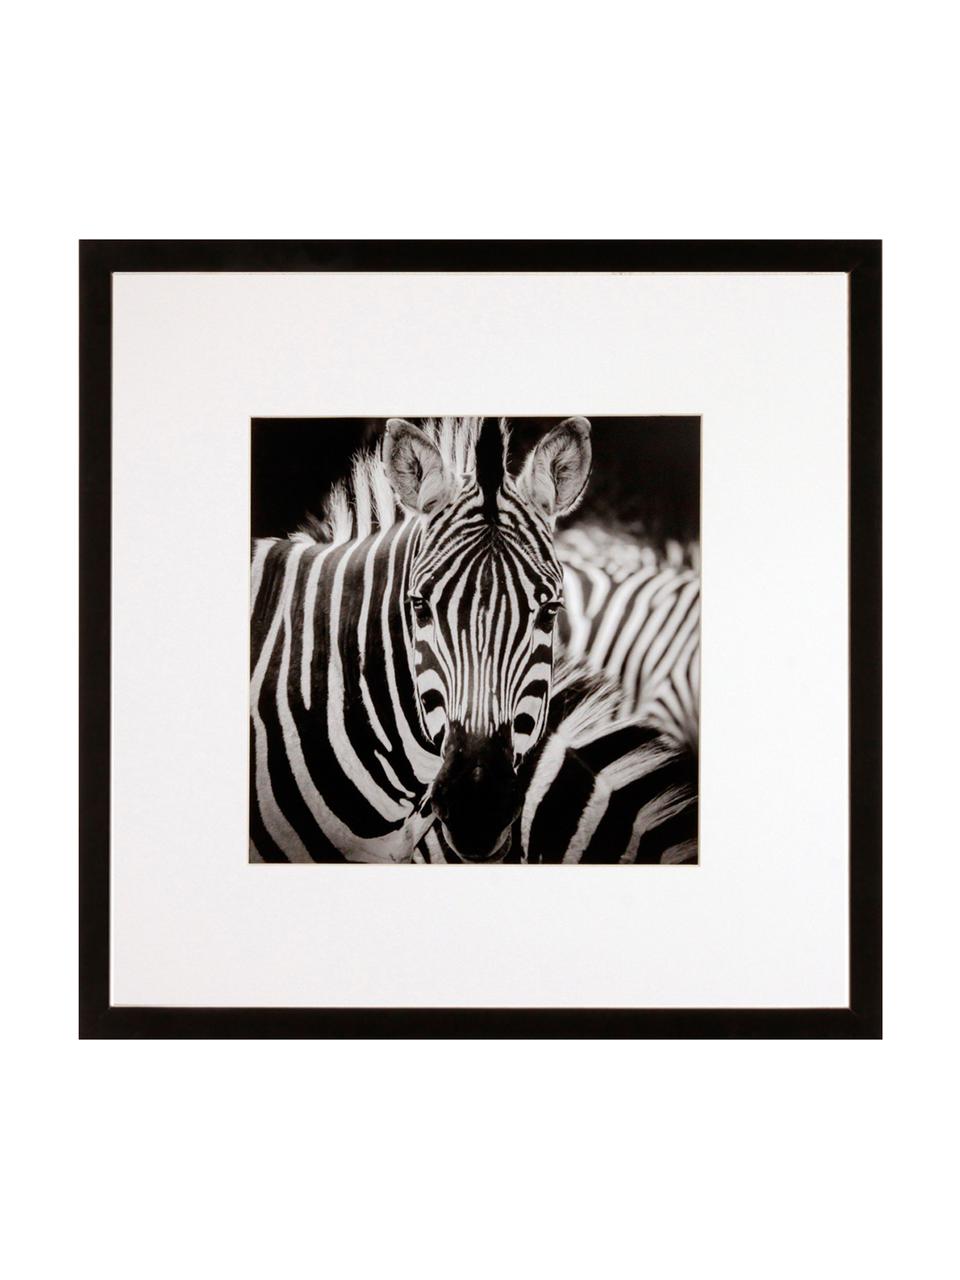 Gerahmter Digitaldruck Zebra, Bild: Digitaldruck, Rahmen: Kunststoffrahmen mit Glas, Schwarz,Weiss, 40 x 40 cm